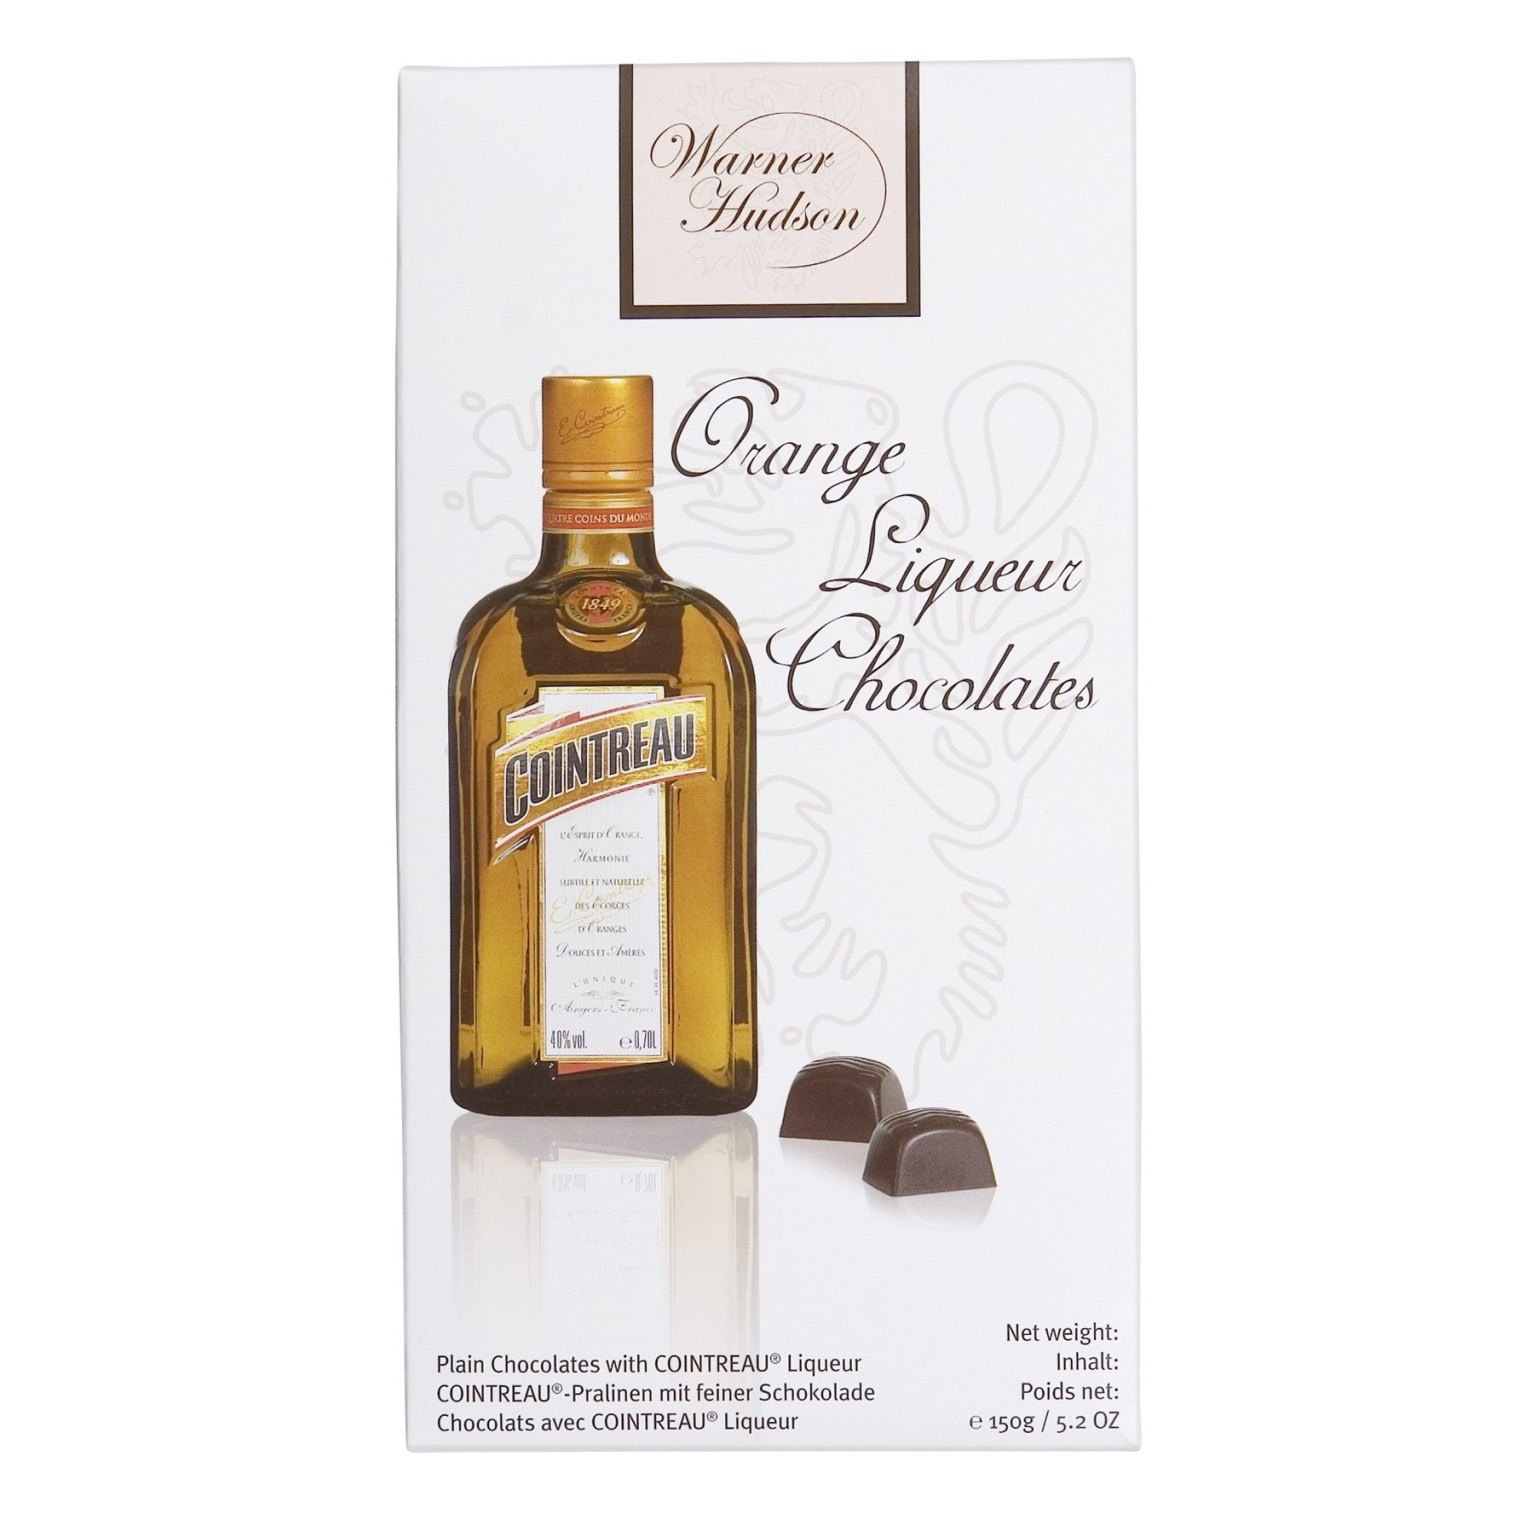 фото Набор шоколадных конфет piasten warner hudson с ликером куантро 150 г